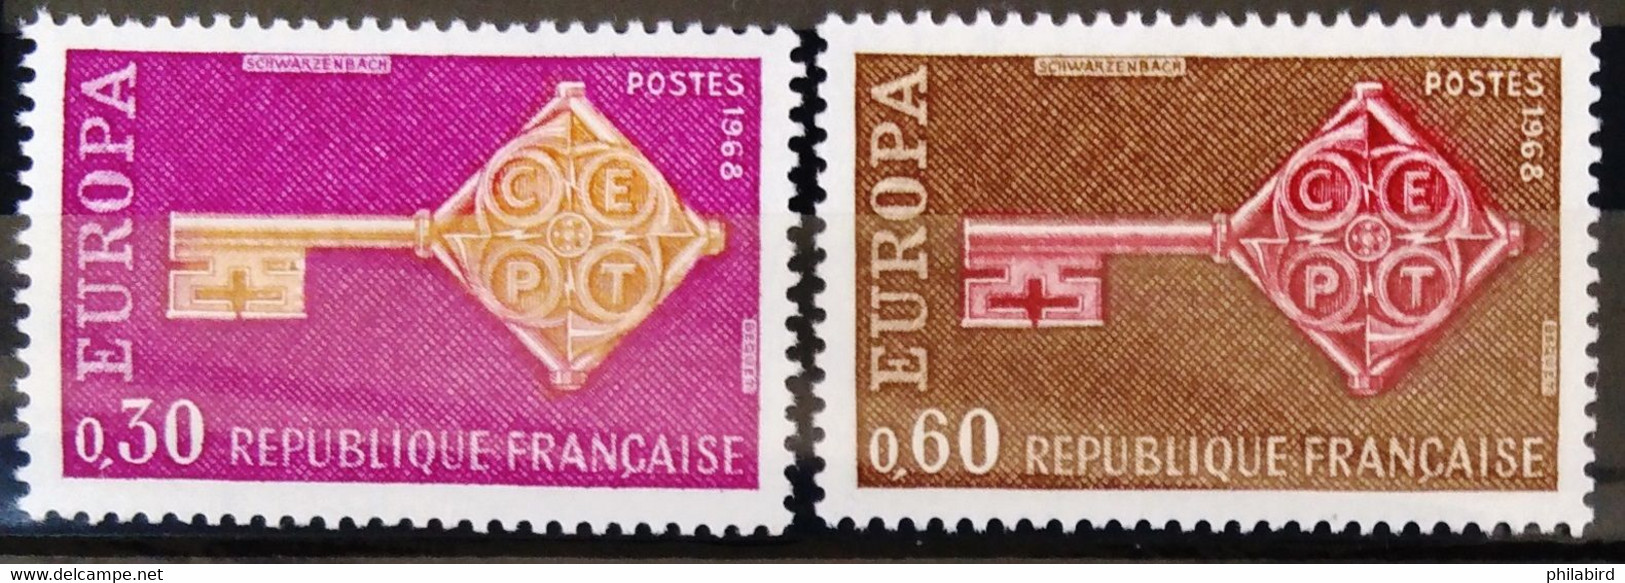 EUROPA 1968 - FRANCE                    N° 1556/1557                       NEUF** - 1968